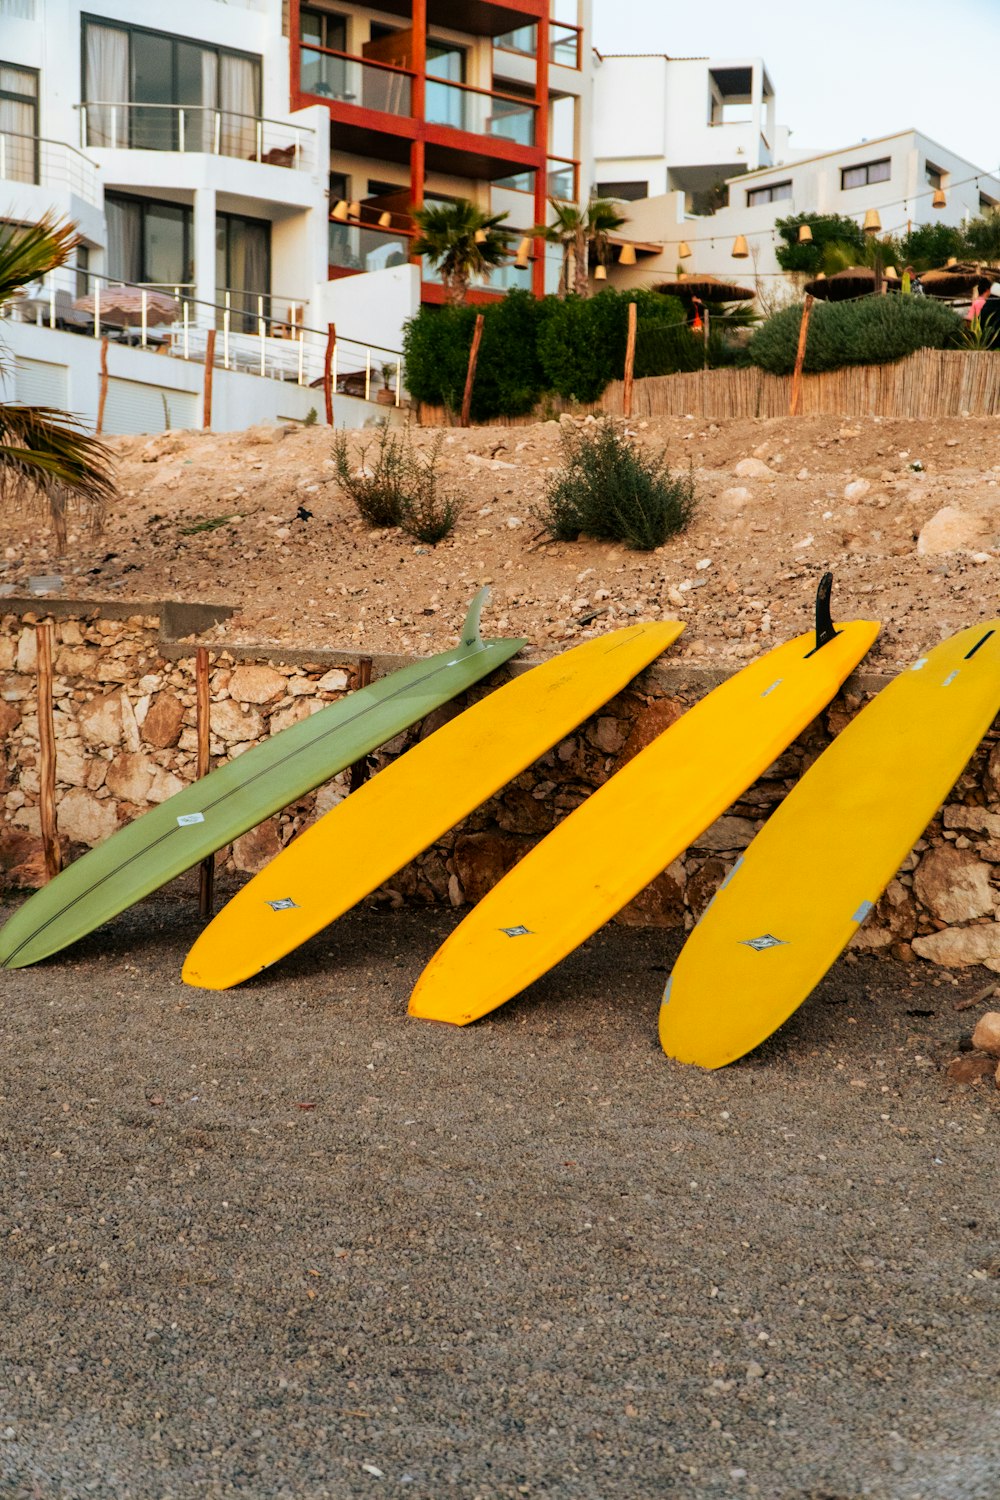 Tres tablas de surf apoyadas contra un muro de piedra